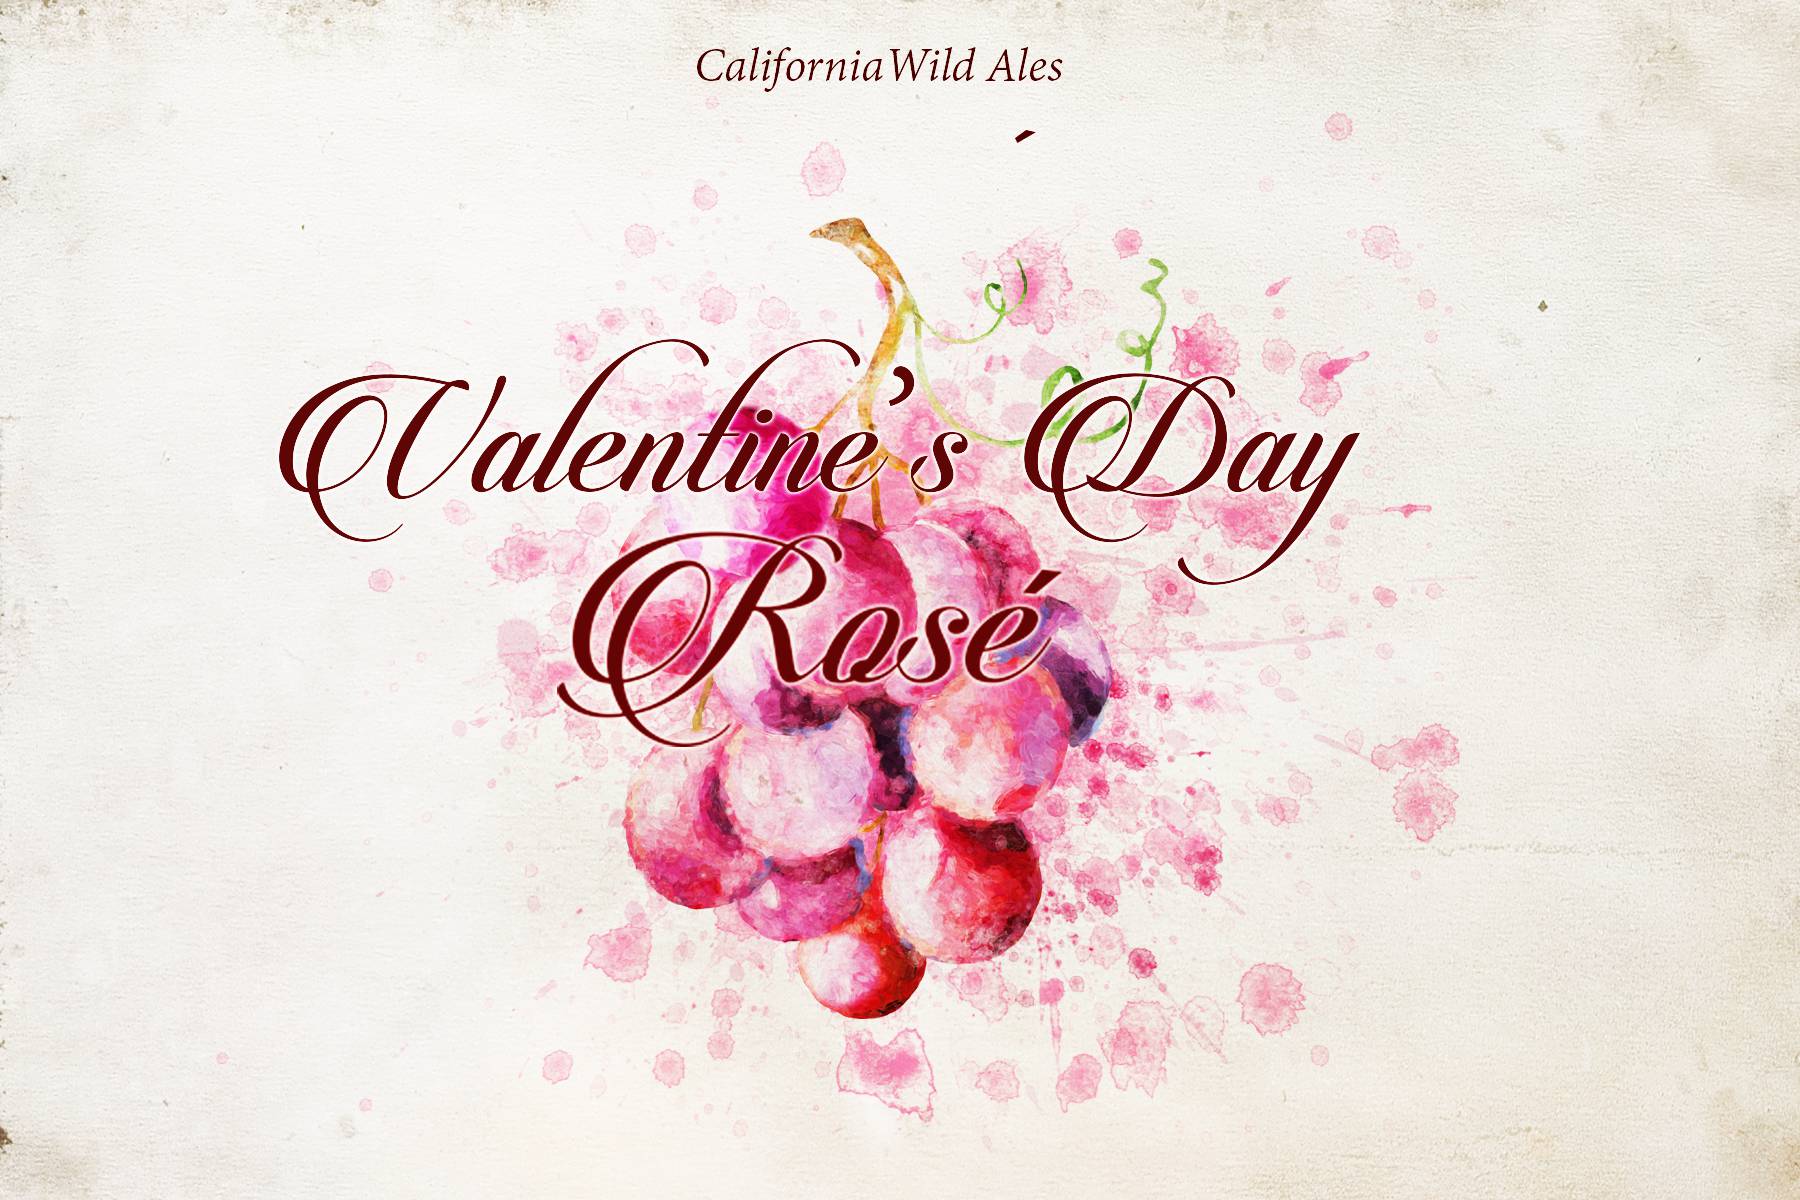 Valentine's Day Rosé Wild Ale